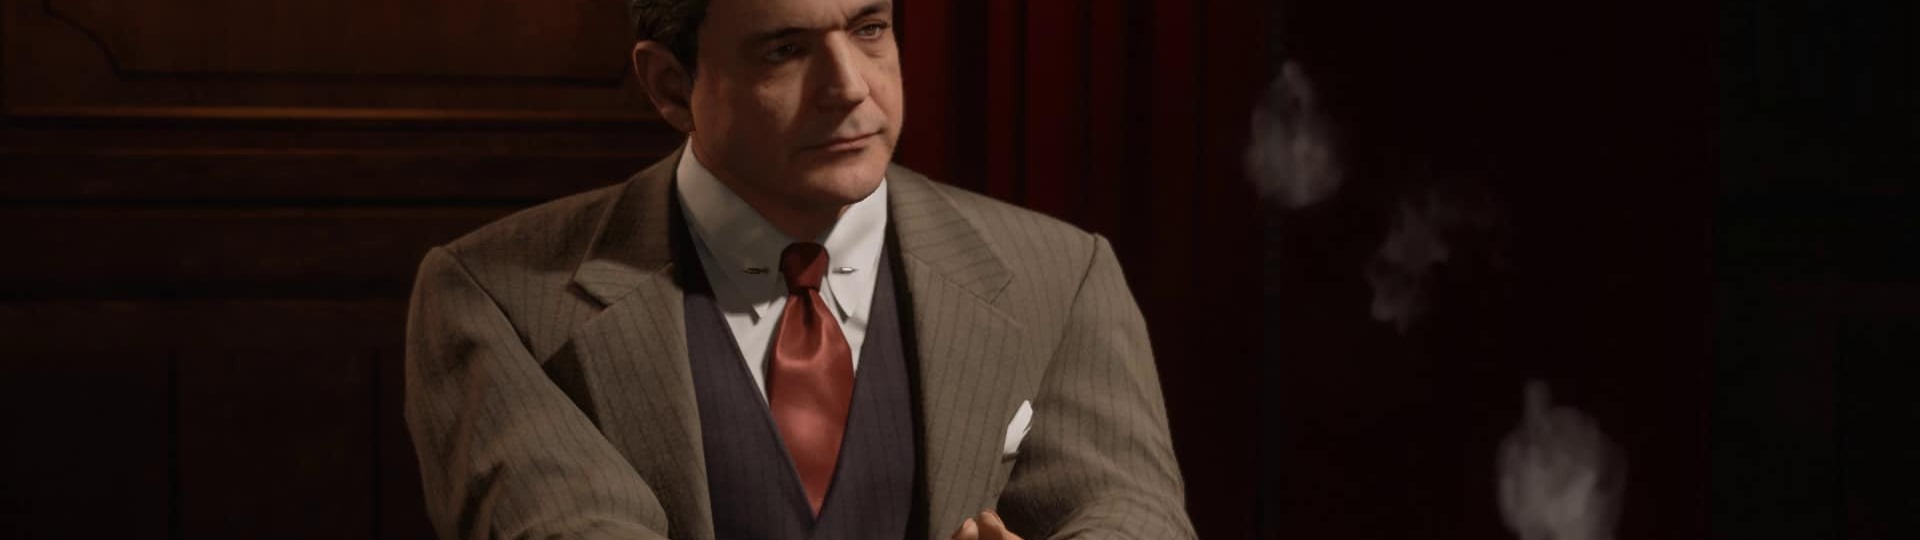 Mafia 4 se má odehrávat na Sicílii, Don Salieri v hlavní roli | Spekulace